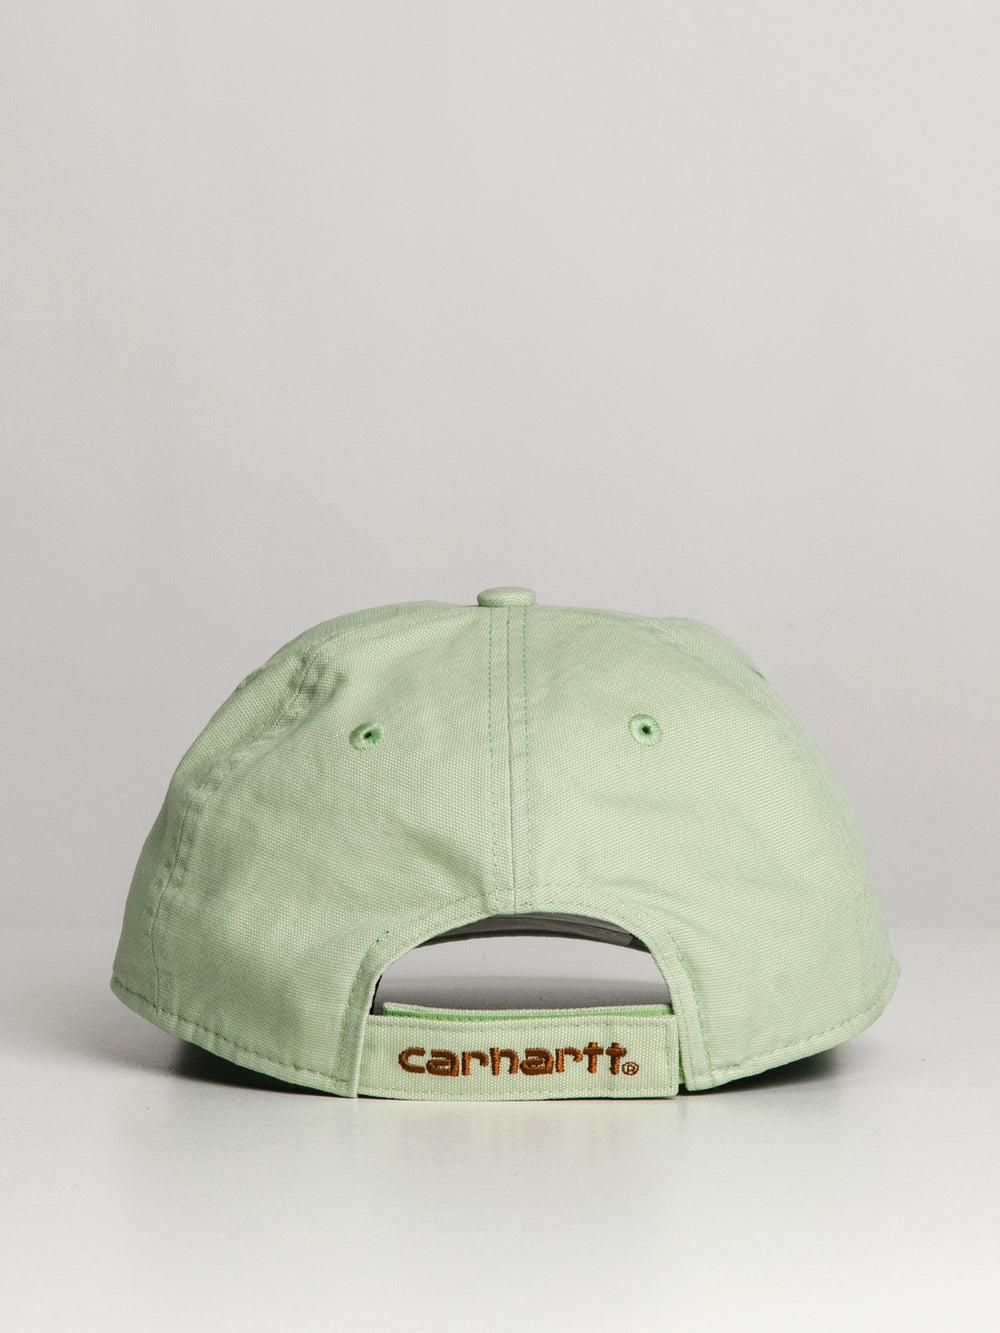 CARHARTT ODESSA CANVAS CAP - SOFT GREEN - CLEARANCE